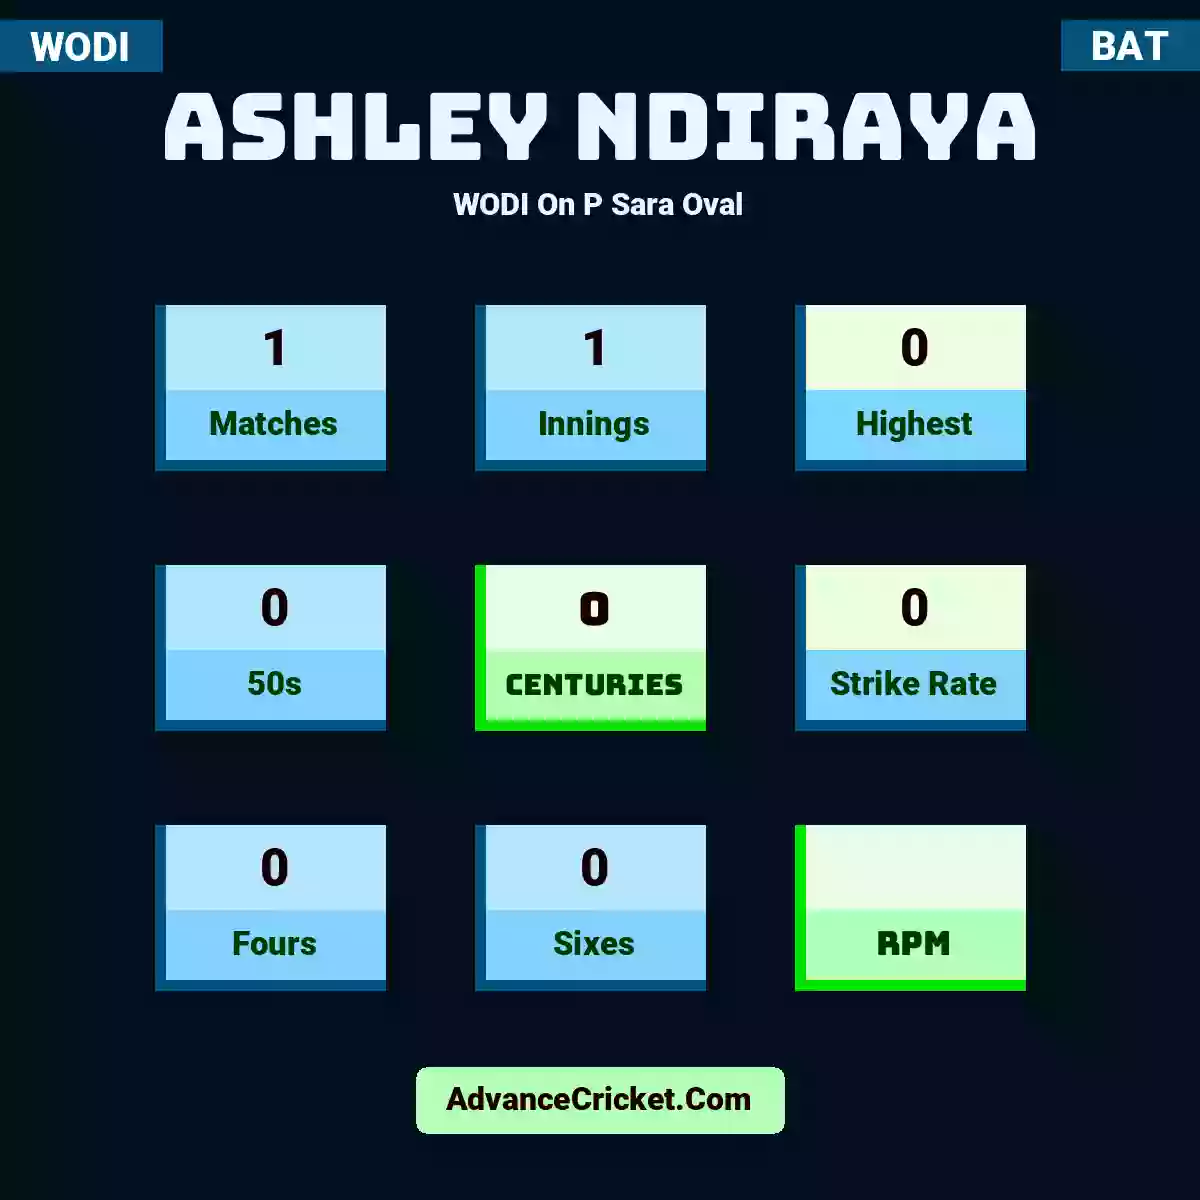 Ashley Ndiraya WODI  On P Sara Oval, Ashley Ndiraya played 1 matches, scored 0 runs as highest, 0 half-centuries, and 0 centuries, with a strike rate of 0. A.Ndiraya hit 0 fours and 0 sixes.